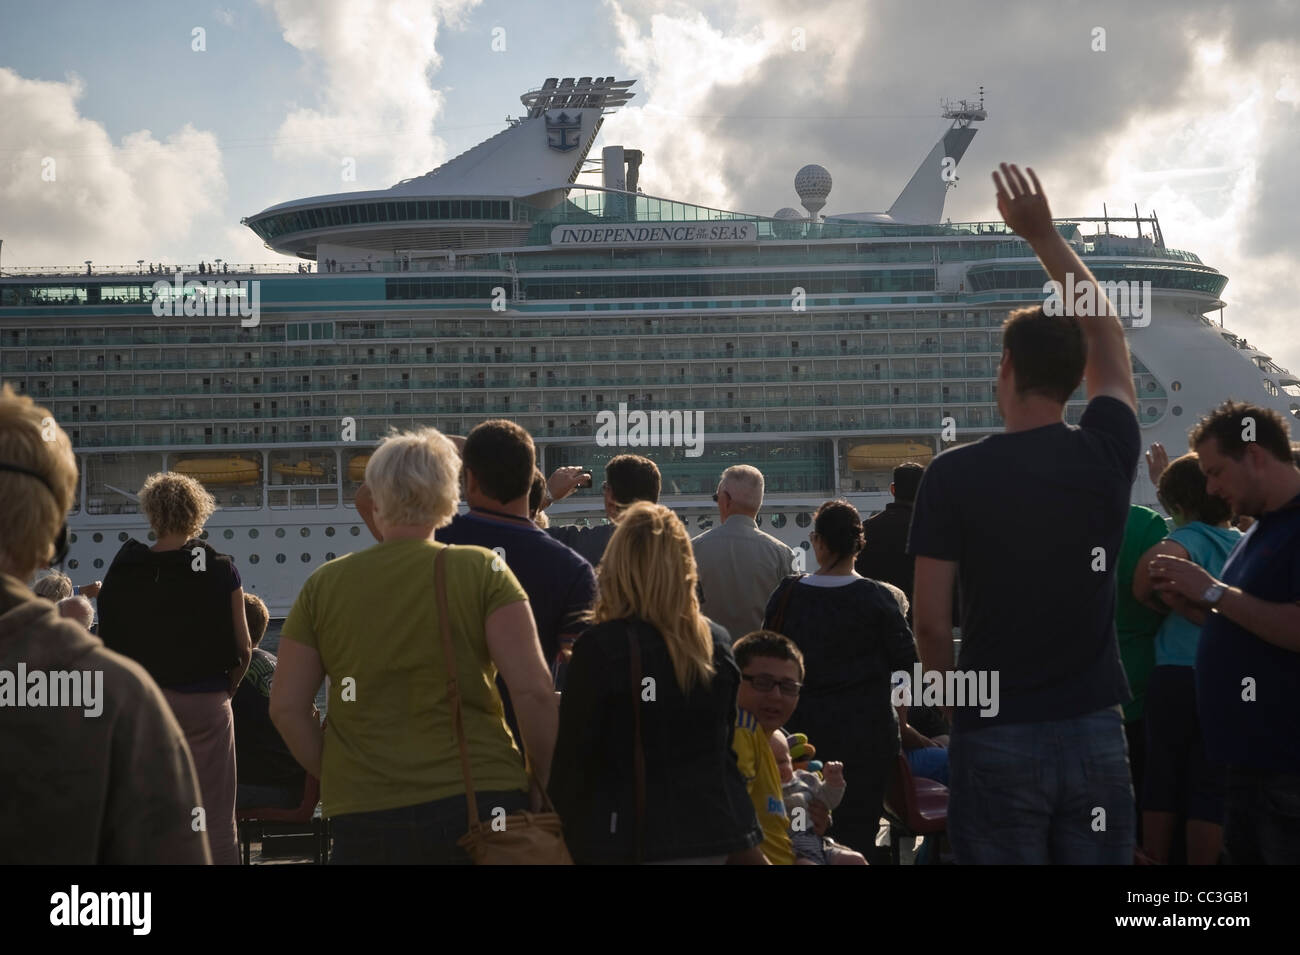 Personnes sur une île de Wight ferry signe un navire de croisière de luxe Banque D'Images